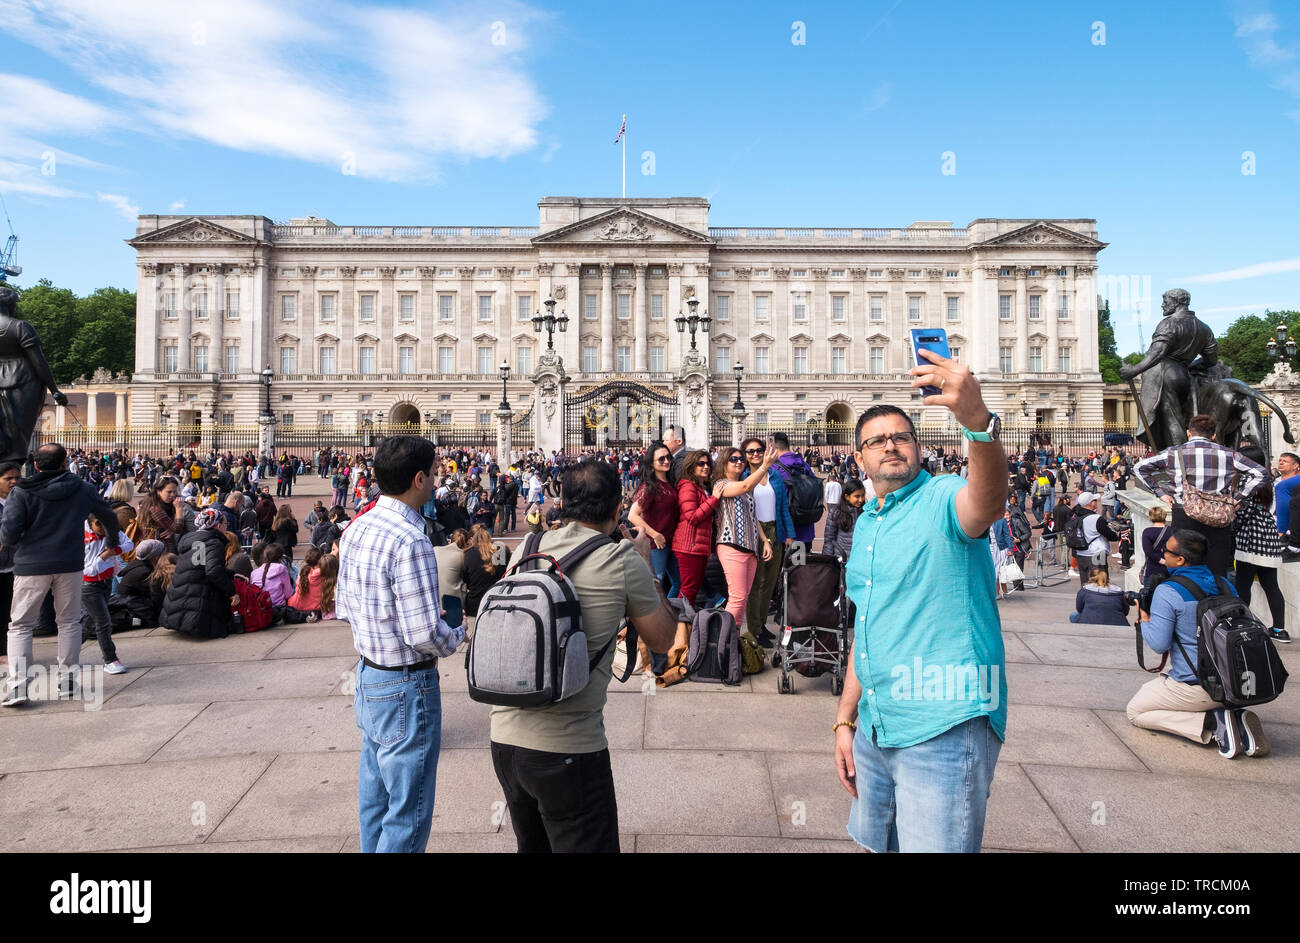 Les touristes en tenant vos autoportraits et des photographies à l'extérieur de Buckingham Palace, London, England, UK Banque D'Images